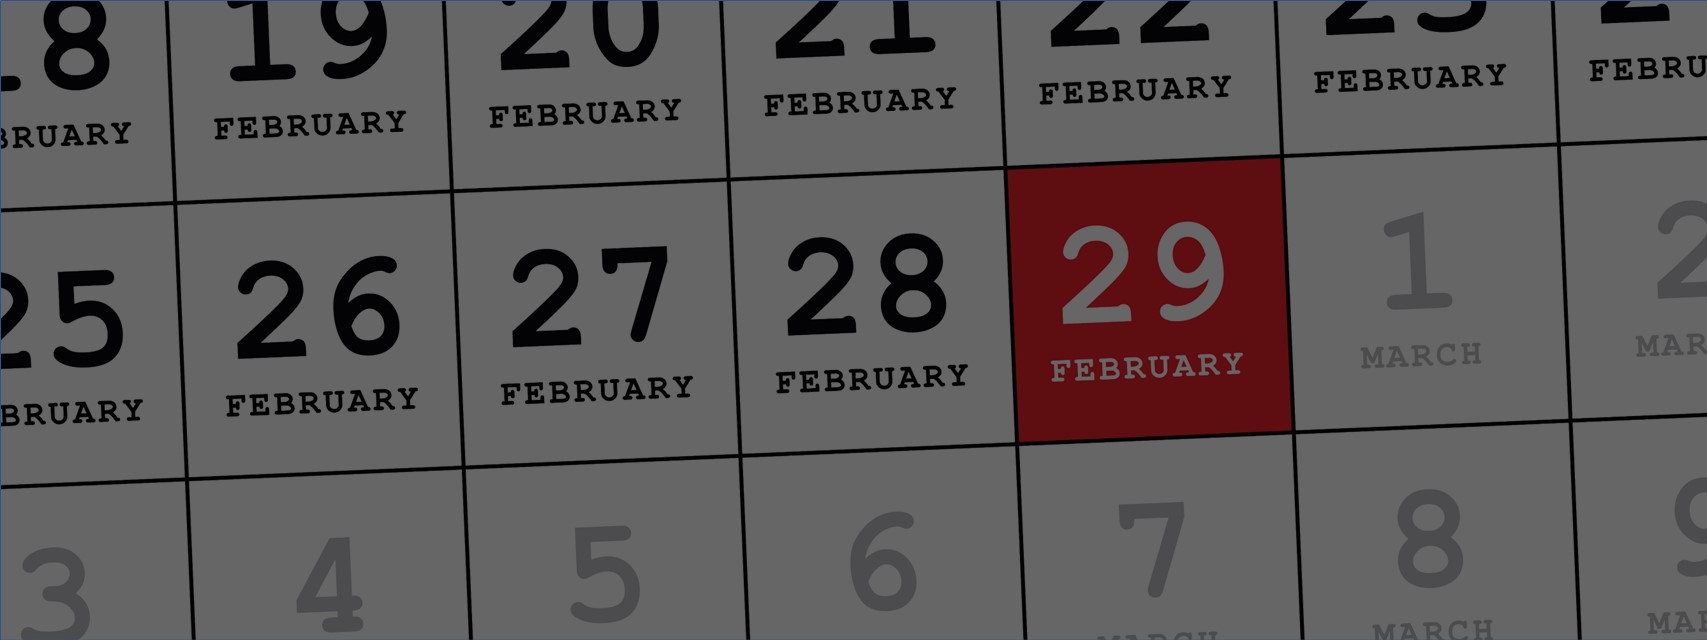 A calendar with February 29 highlighted.